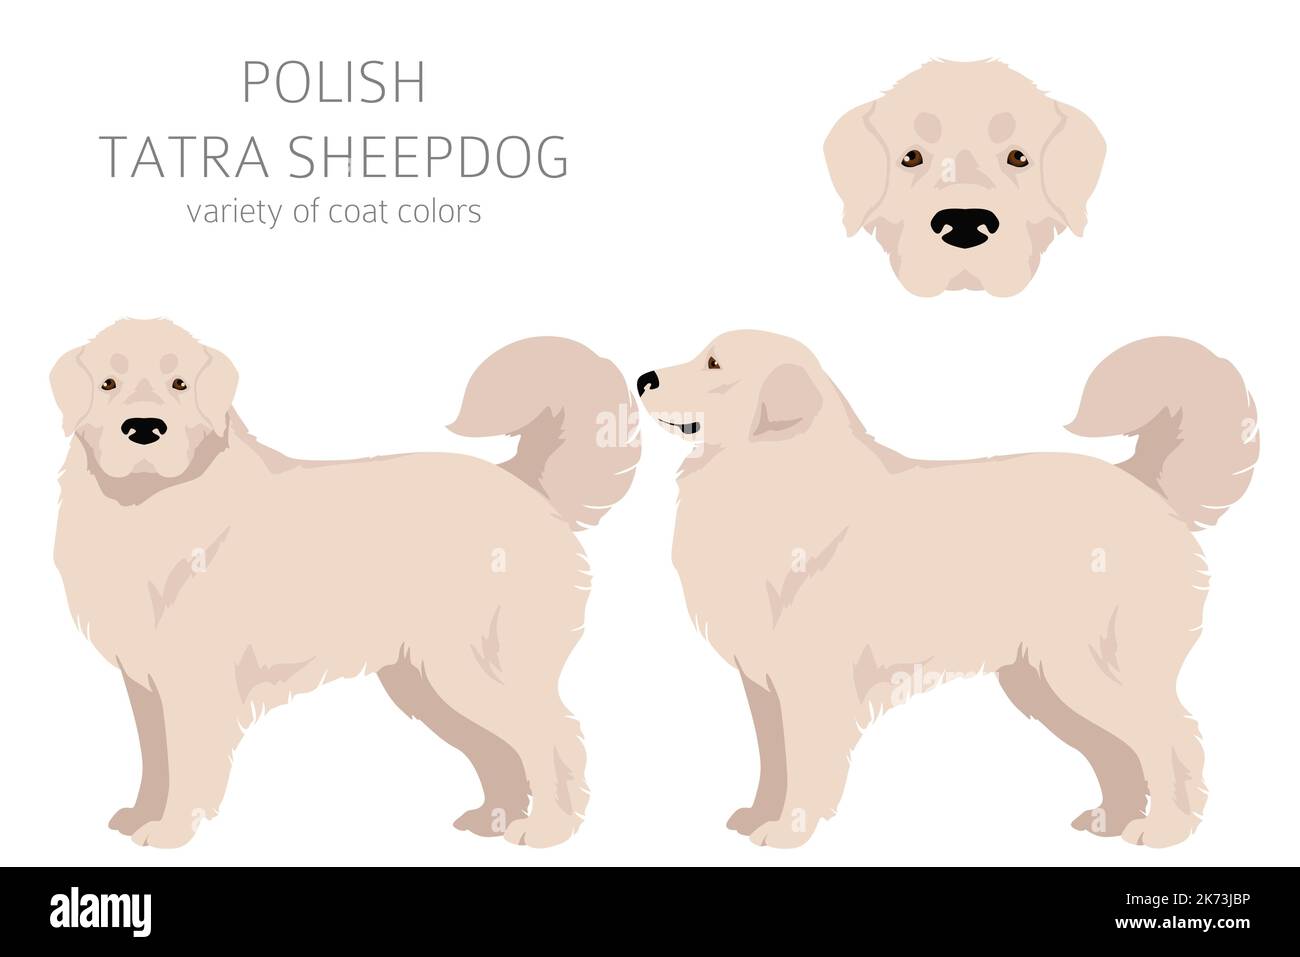 Clipart Polacco dei Tatra Sheepdog. Set di tutti i colori del mantello. Infografica sulle caratteristiche di tutte le razze di cani. Illustrazione vettoriale Illustrazione Vettoriale